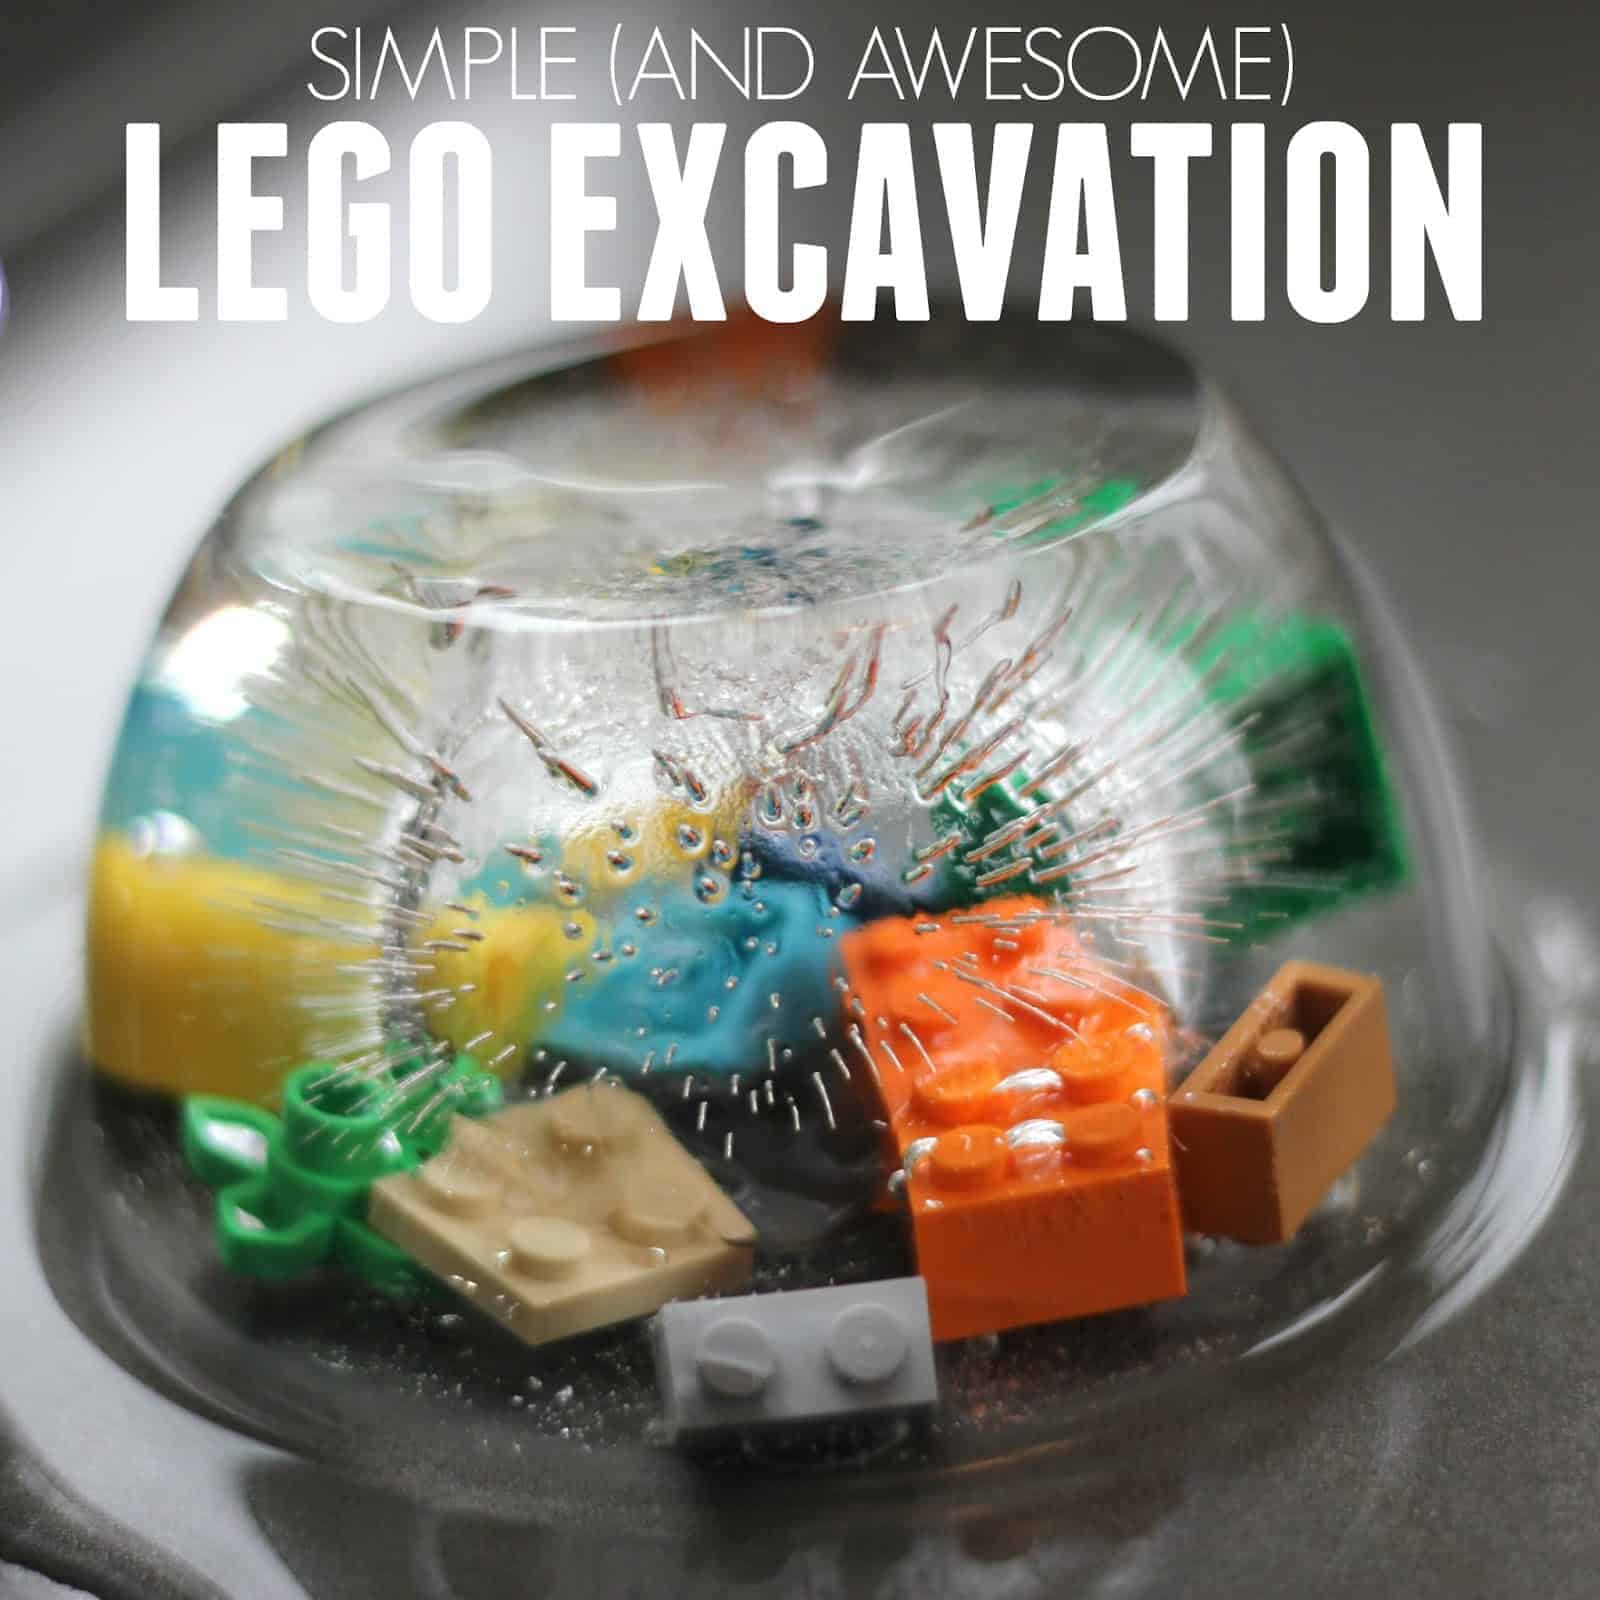 Lego excavation